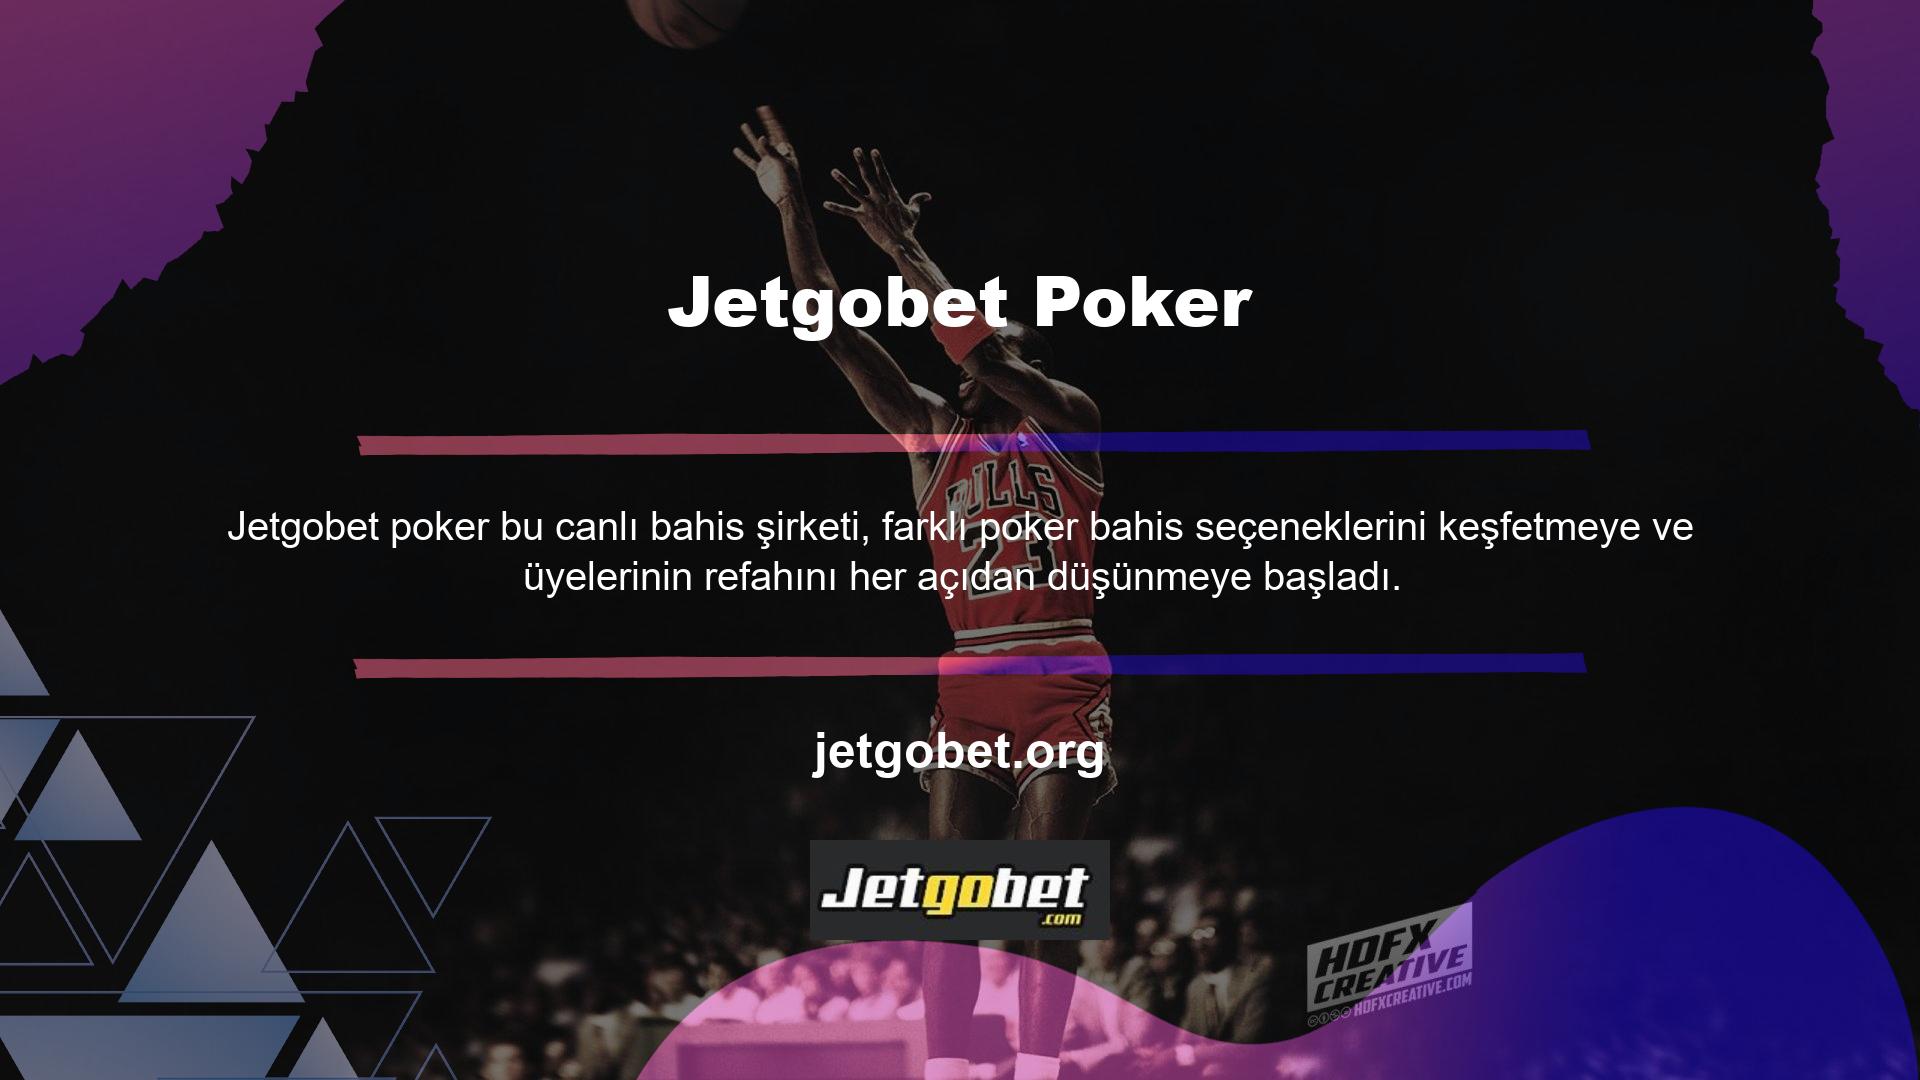 Çevrimiçi bahisçiler, farklı bahis kategorilerindeki bonuslar için farklı poker bahis bonusları sunmaya başladı